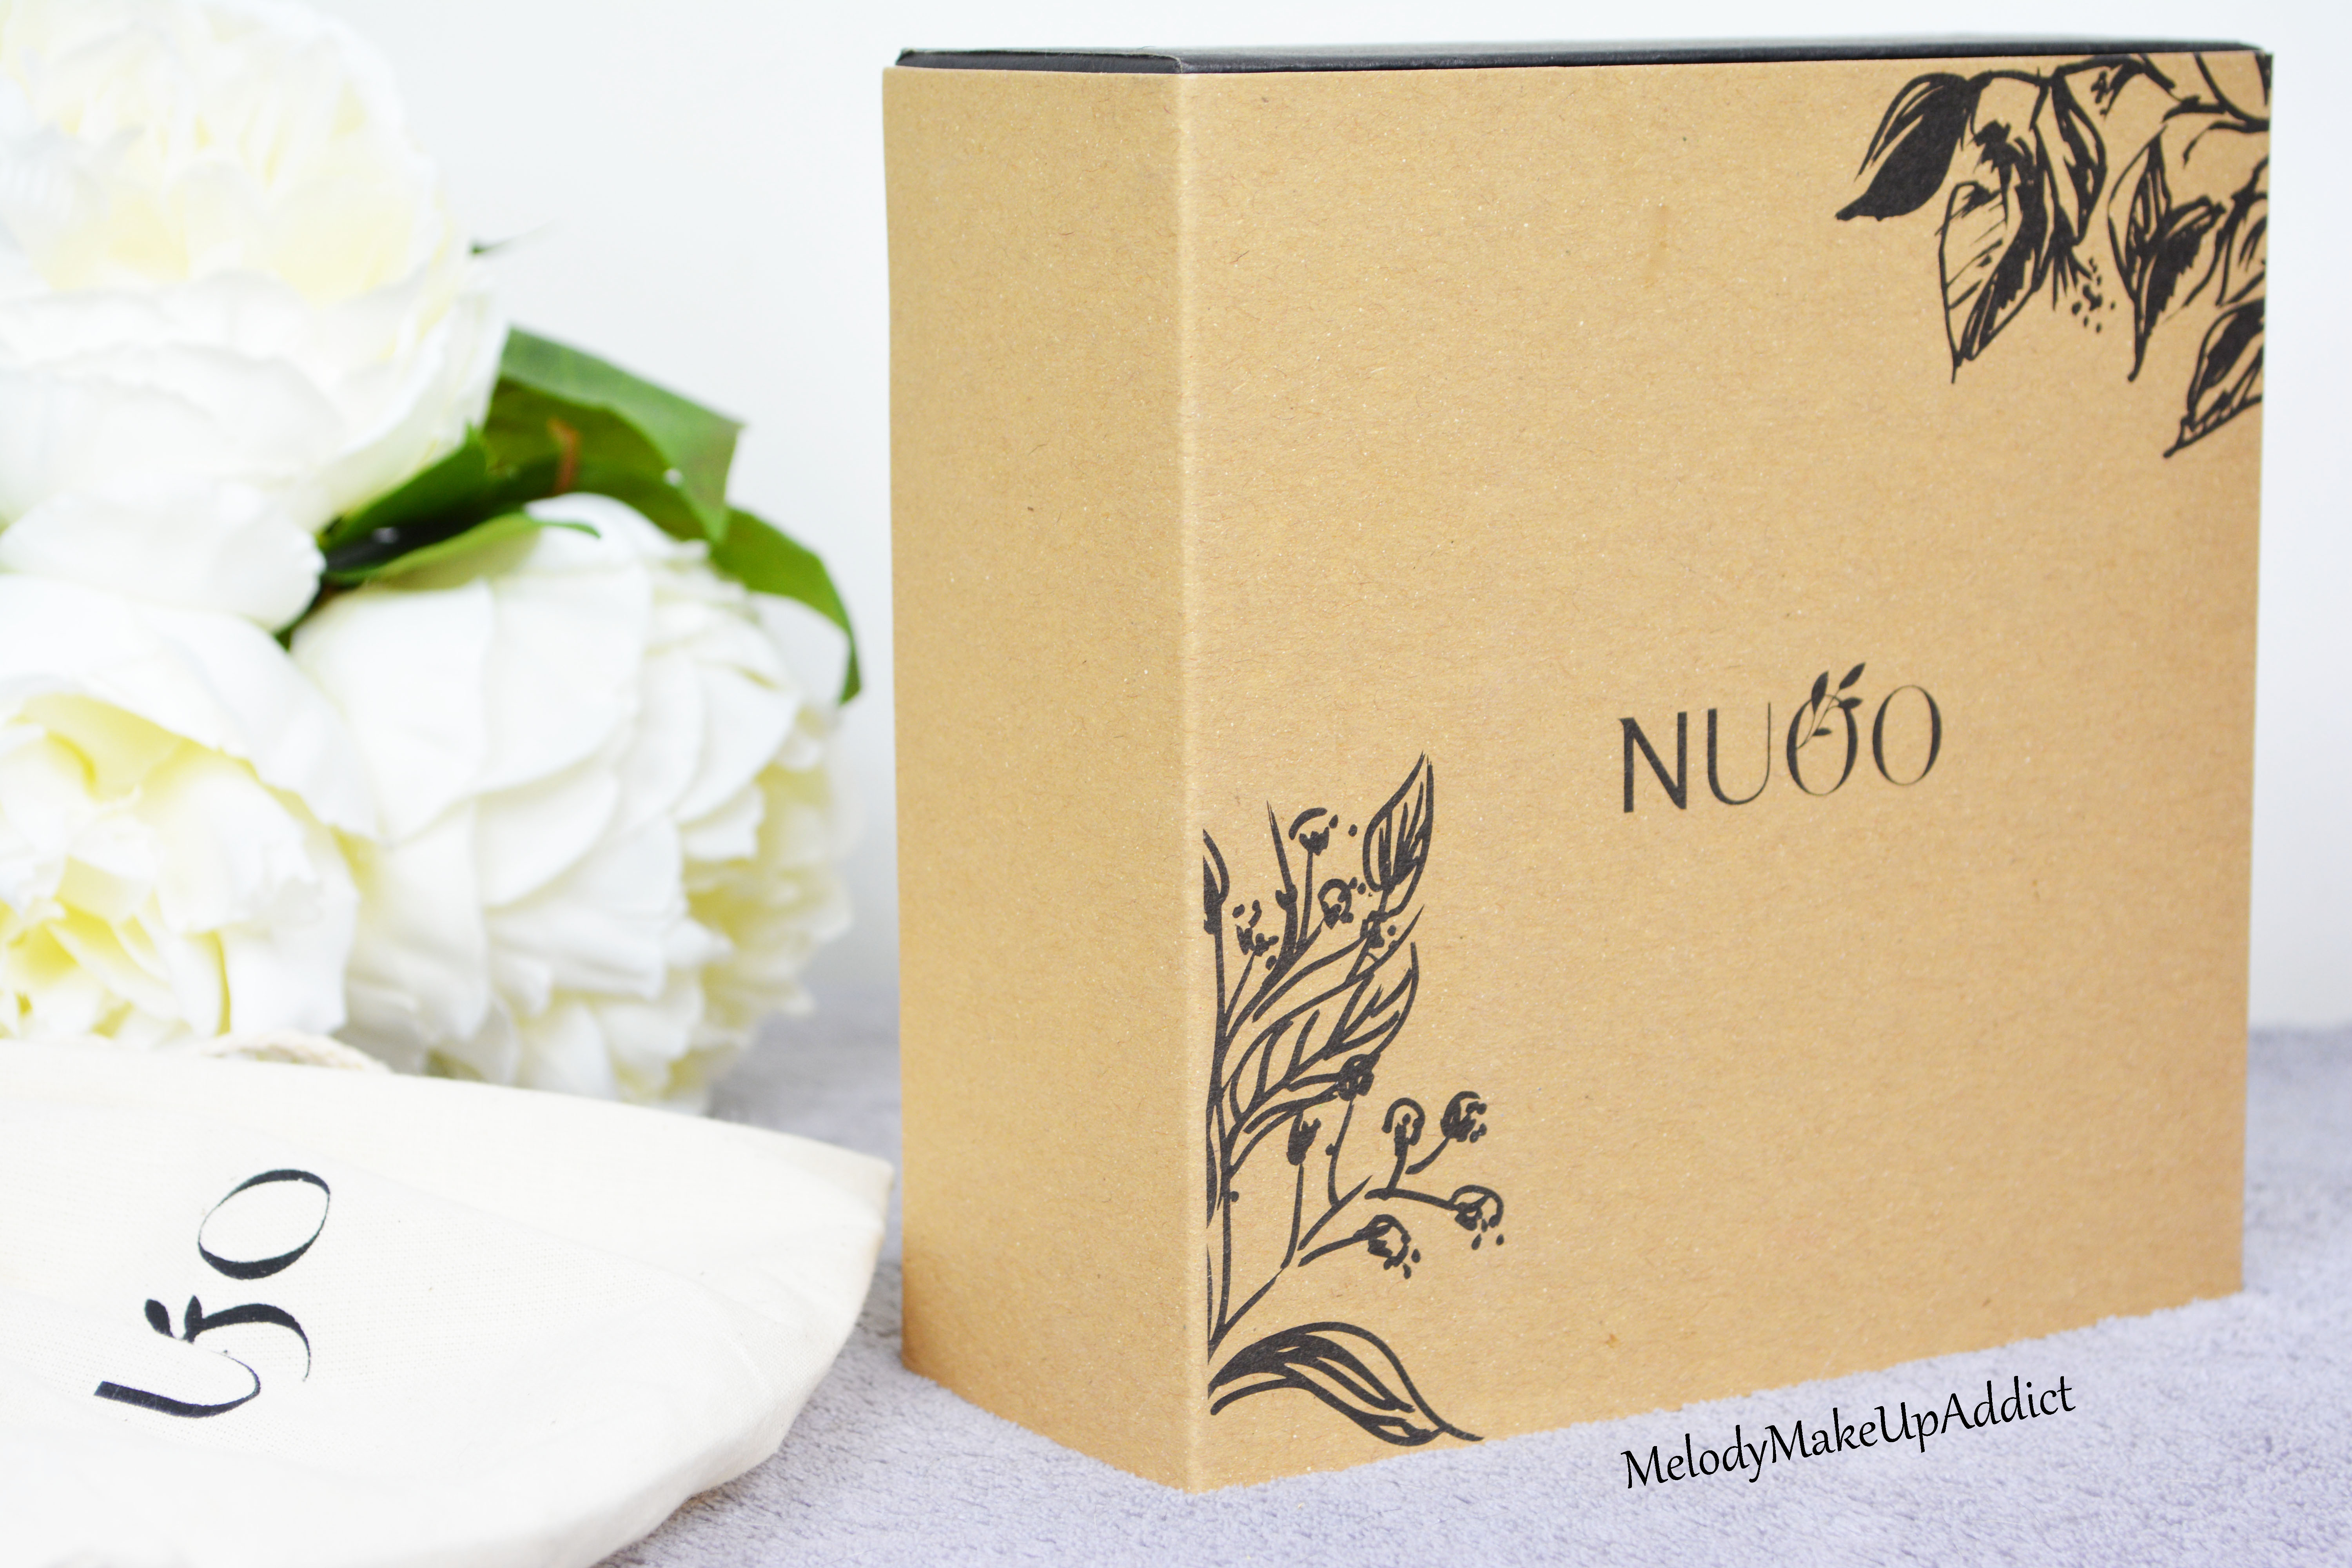 Le lancement de la NuooBox : une box 100% bio